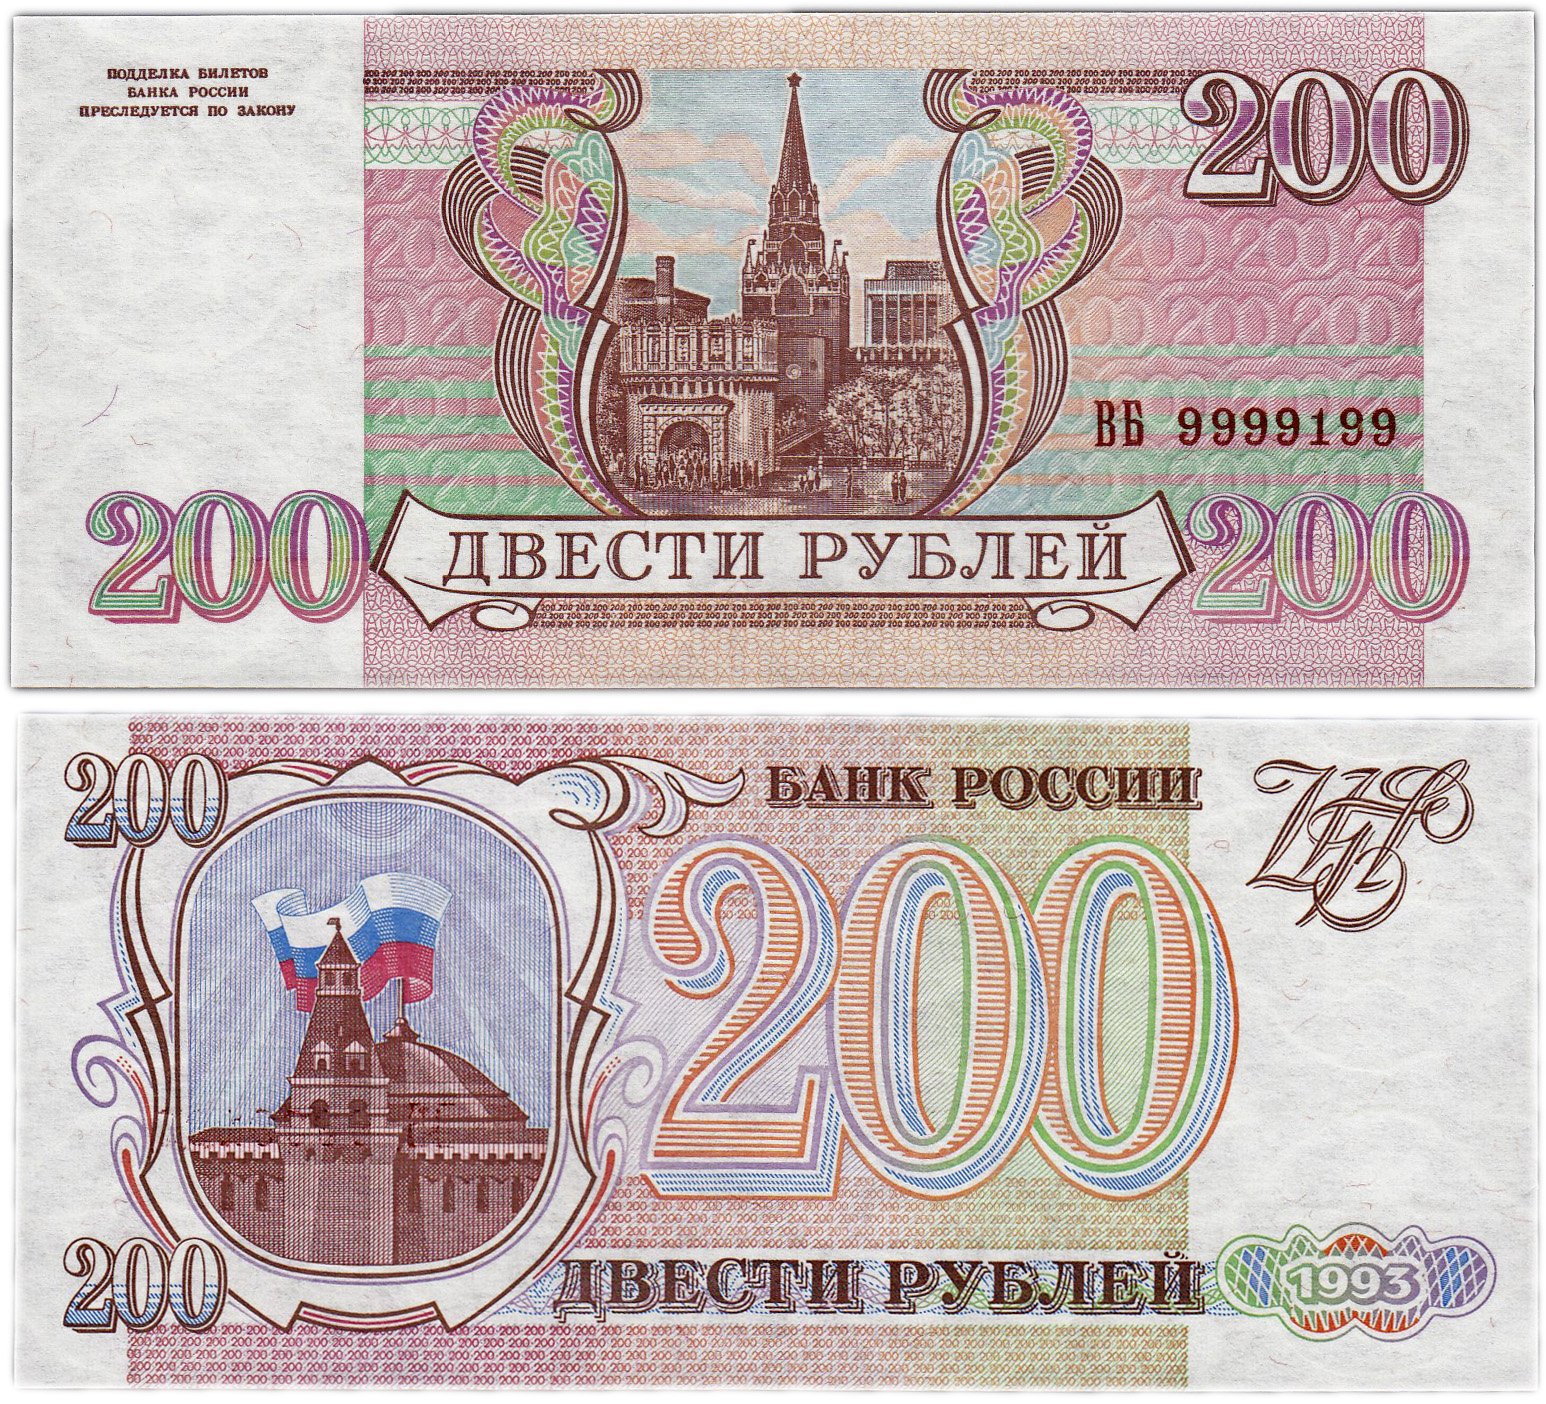 80 рублей 90. 200 Рублей 1995. Двести рублей купюра 1993. Российские рубли 1993 года. Банкнота 200 рублей 1995.